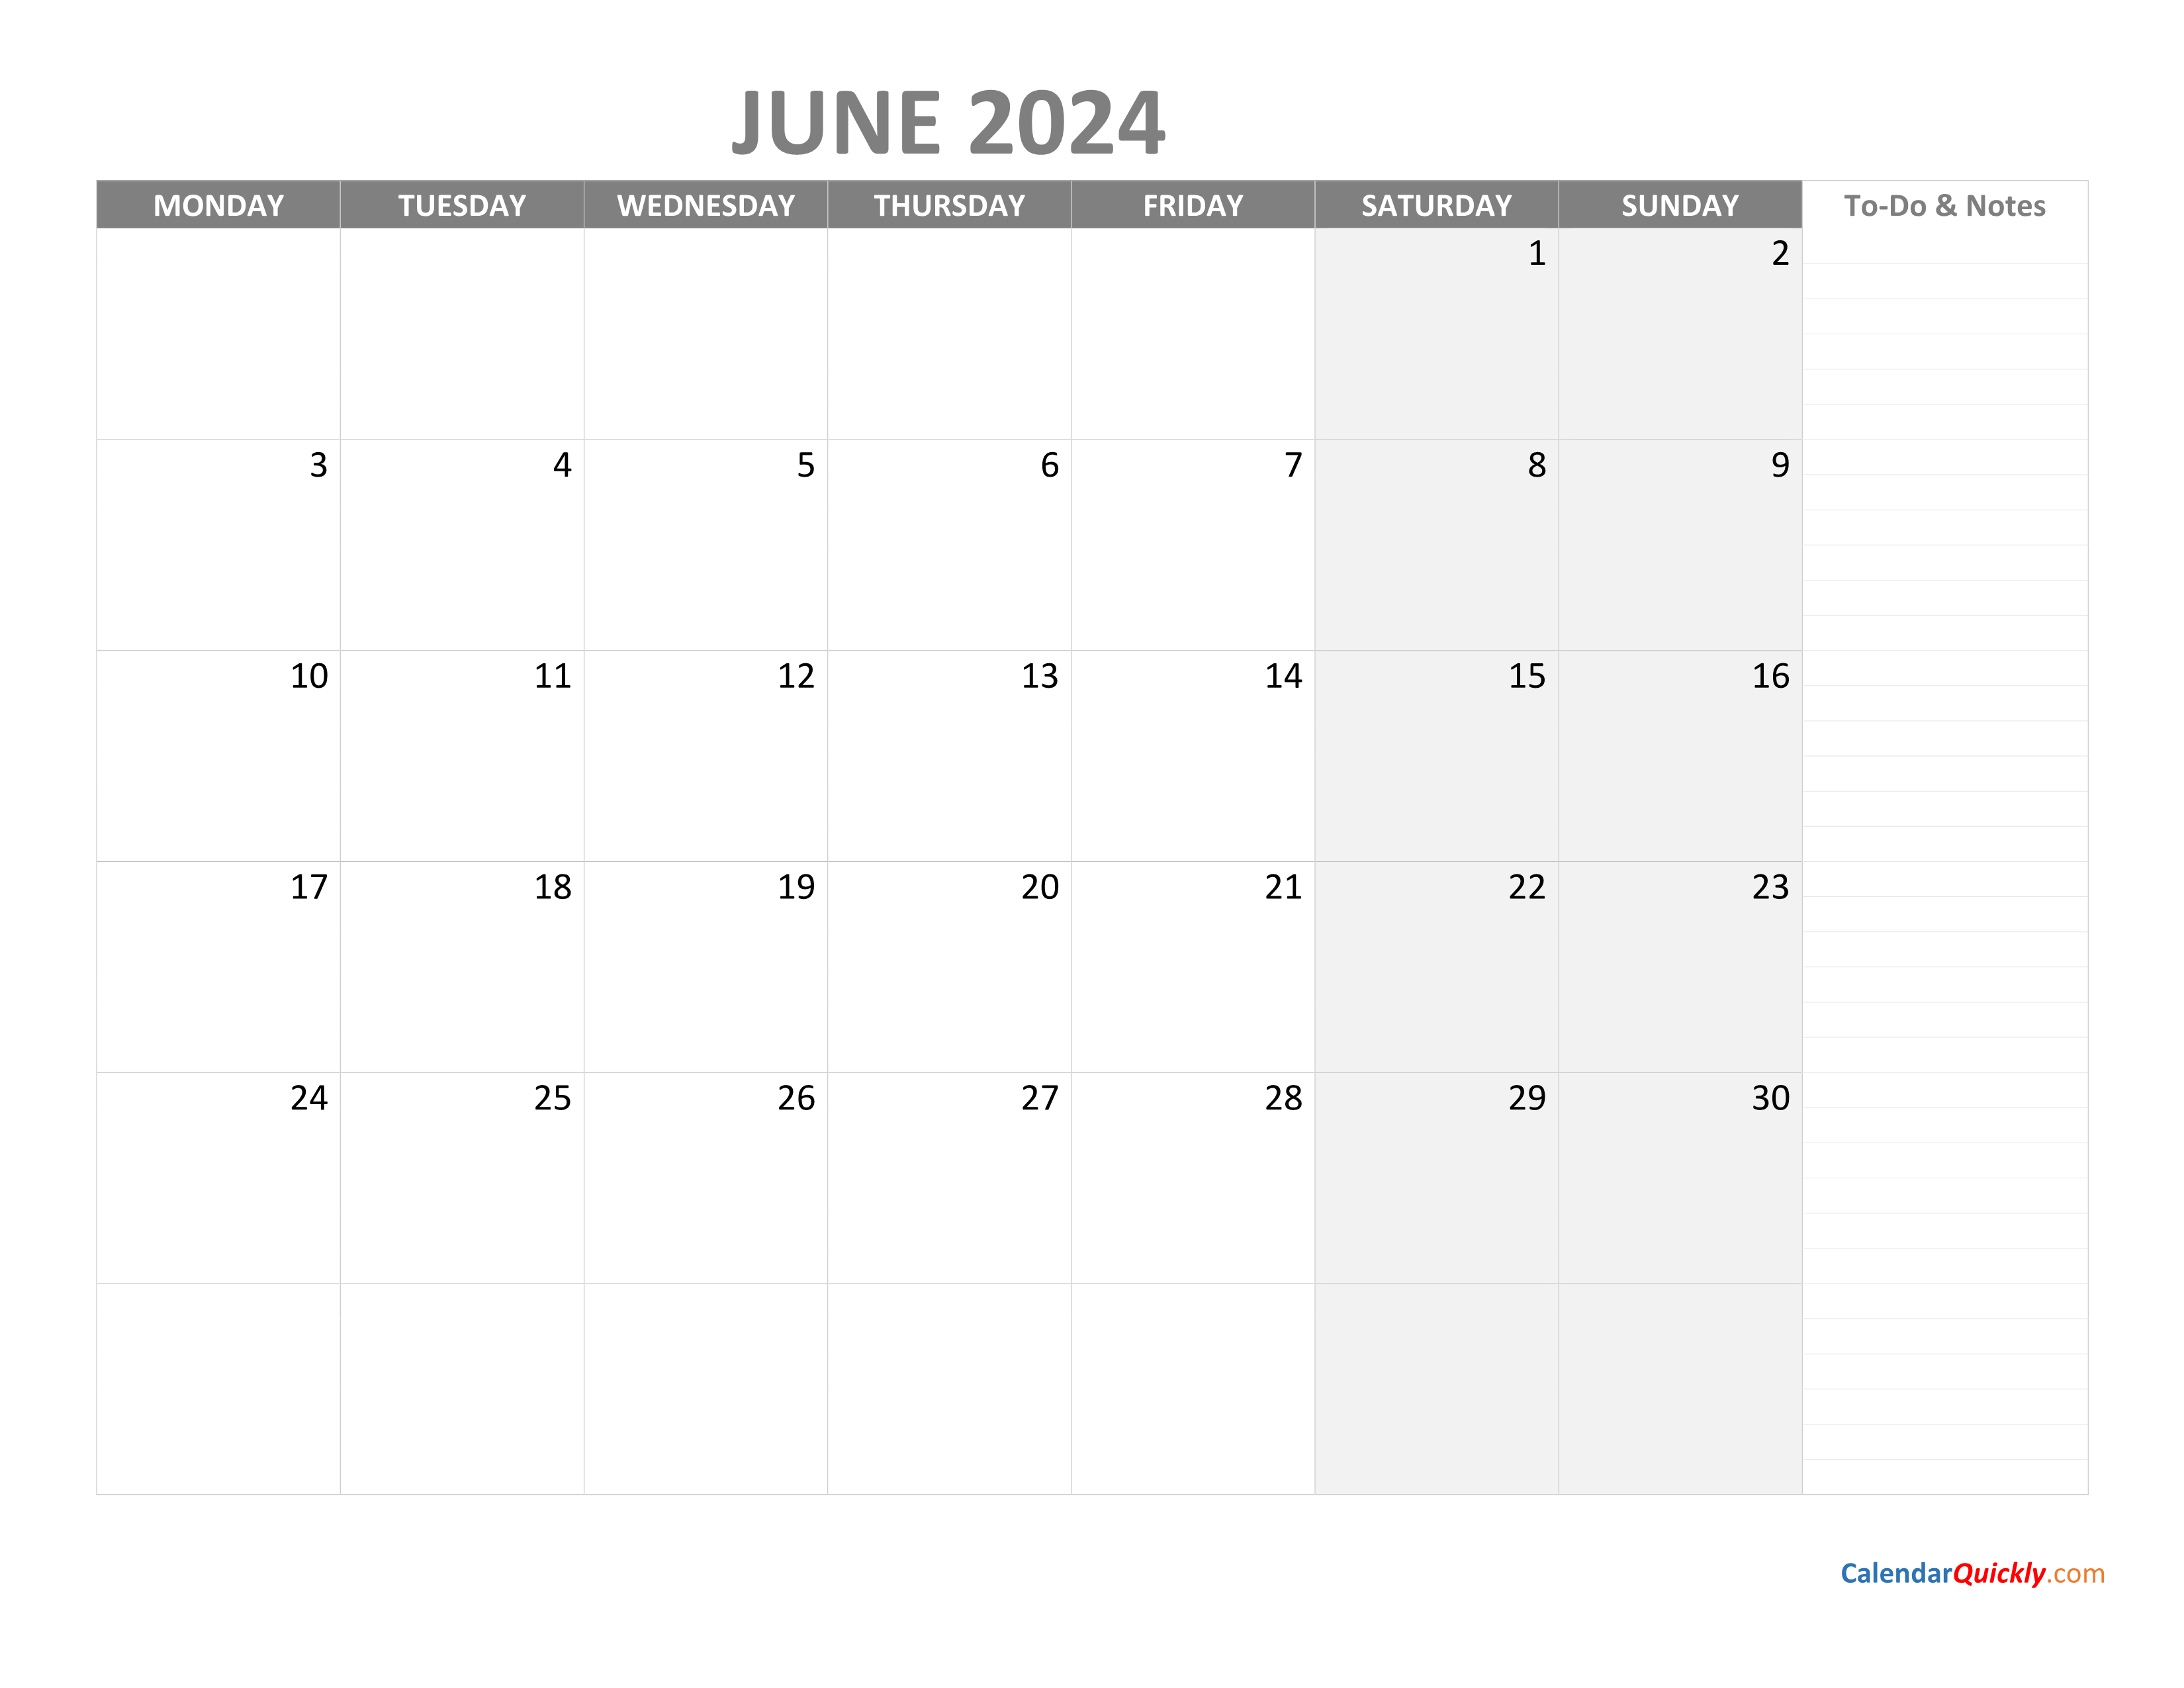 June Monday Calendar 2024 with Notes | Calendar Quickly